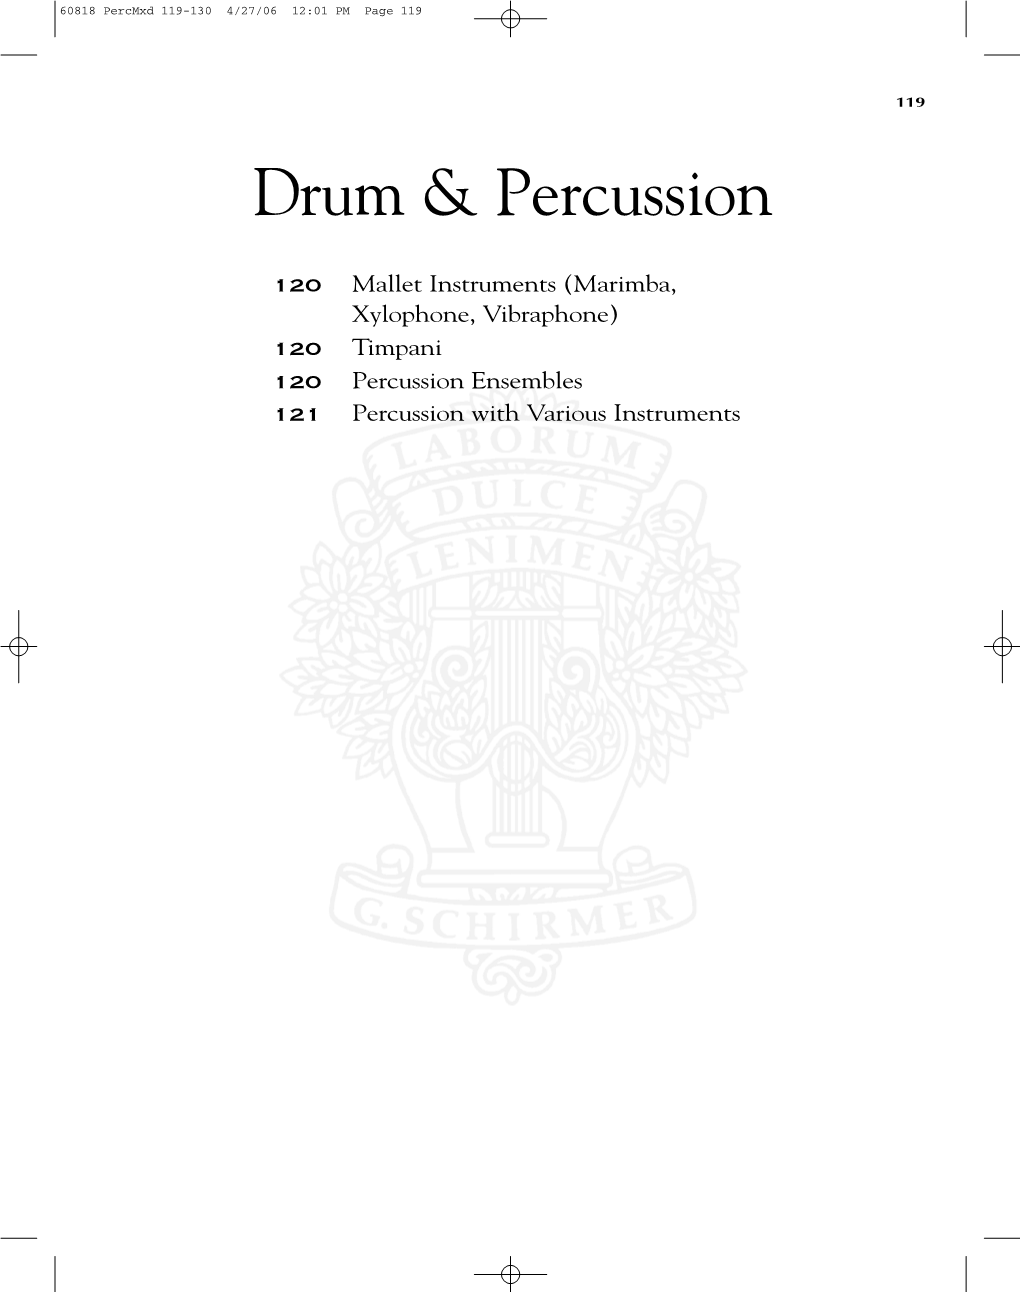 Drum & Percussion